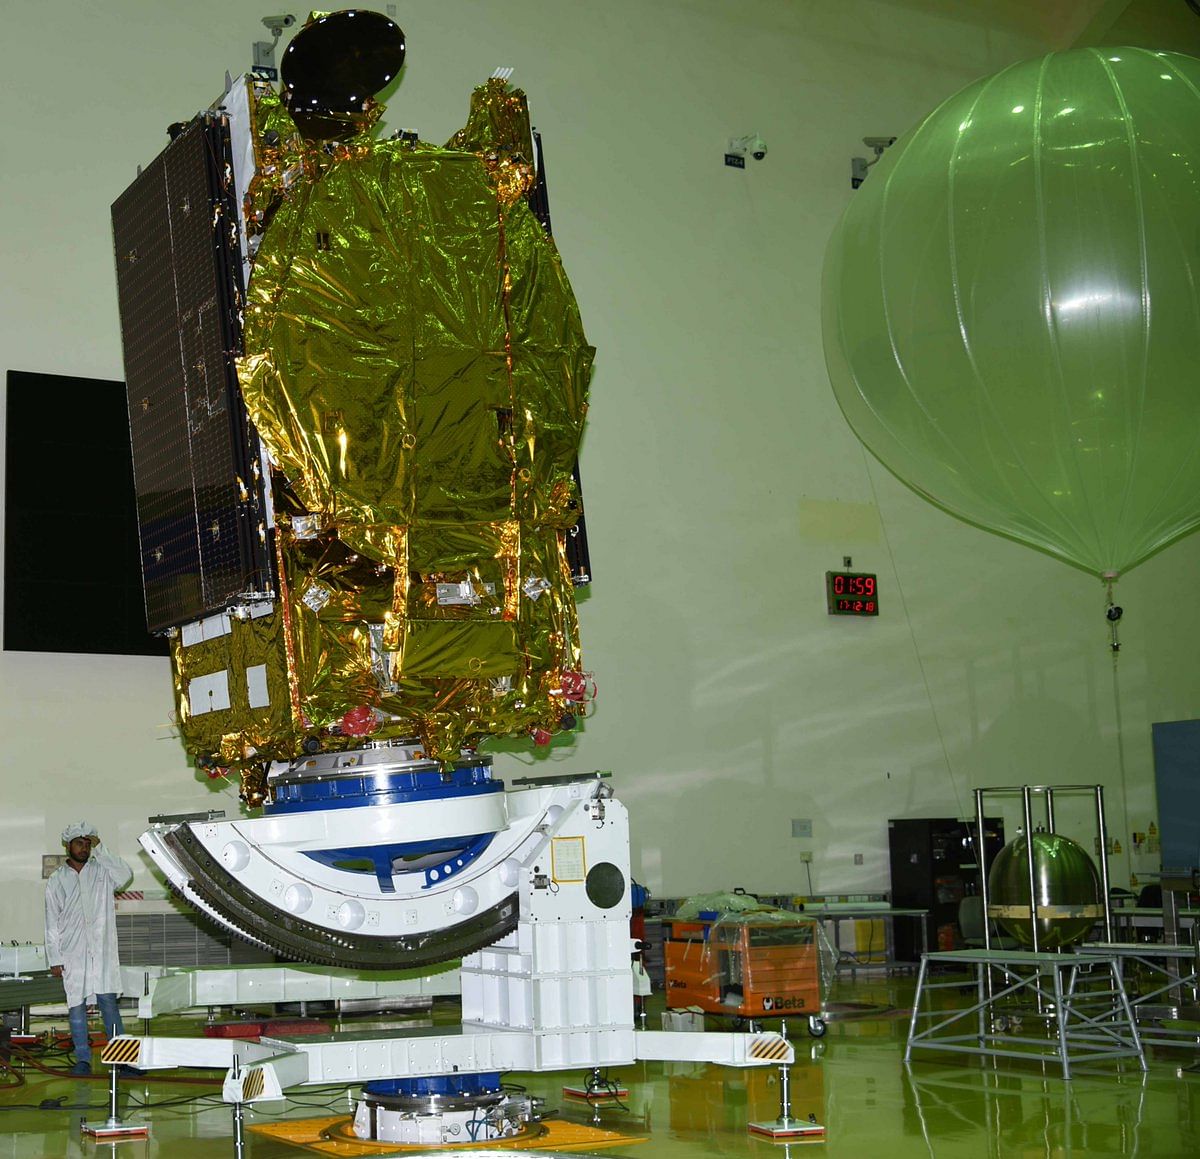 GSAT-31. Photo: Twitter/NASA